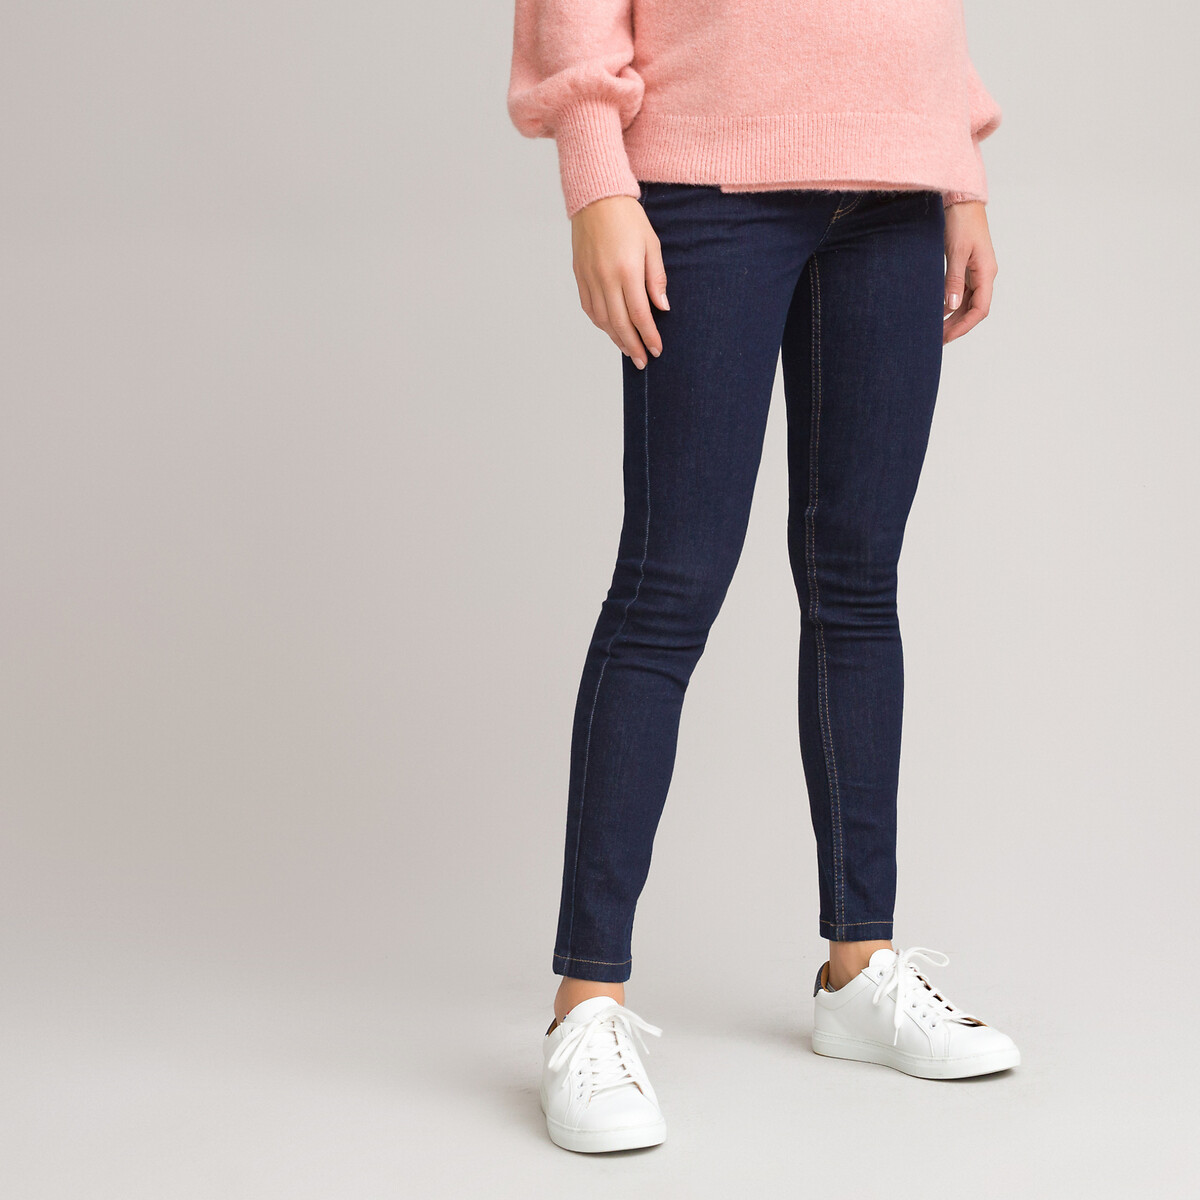 Maxx jogg slim jeans La Redoute Femme Vêtements Pantalons & Jeans Jeans Jeggings 